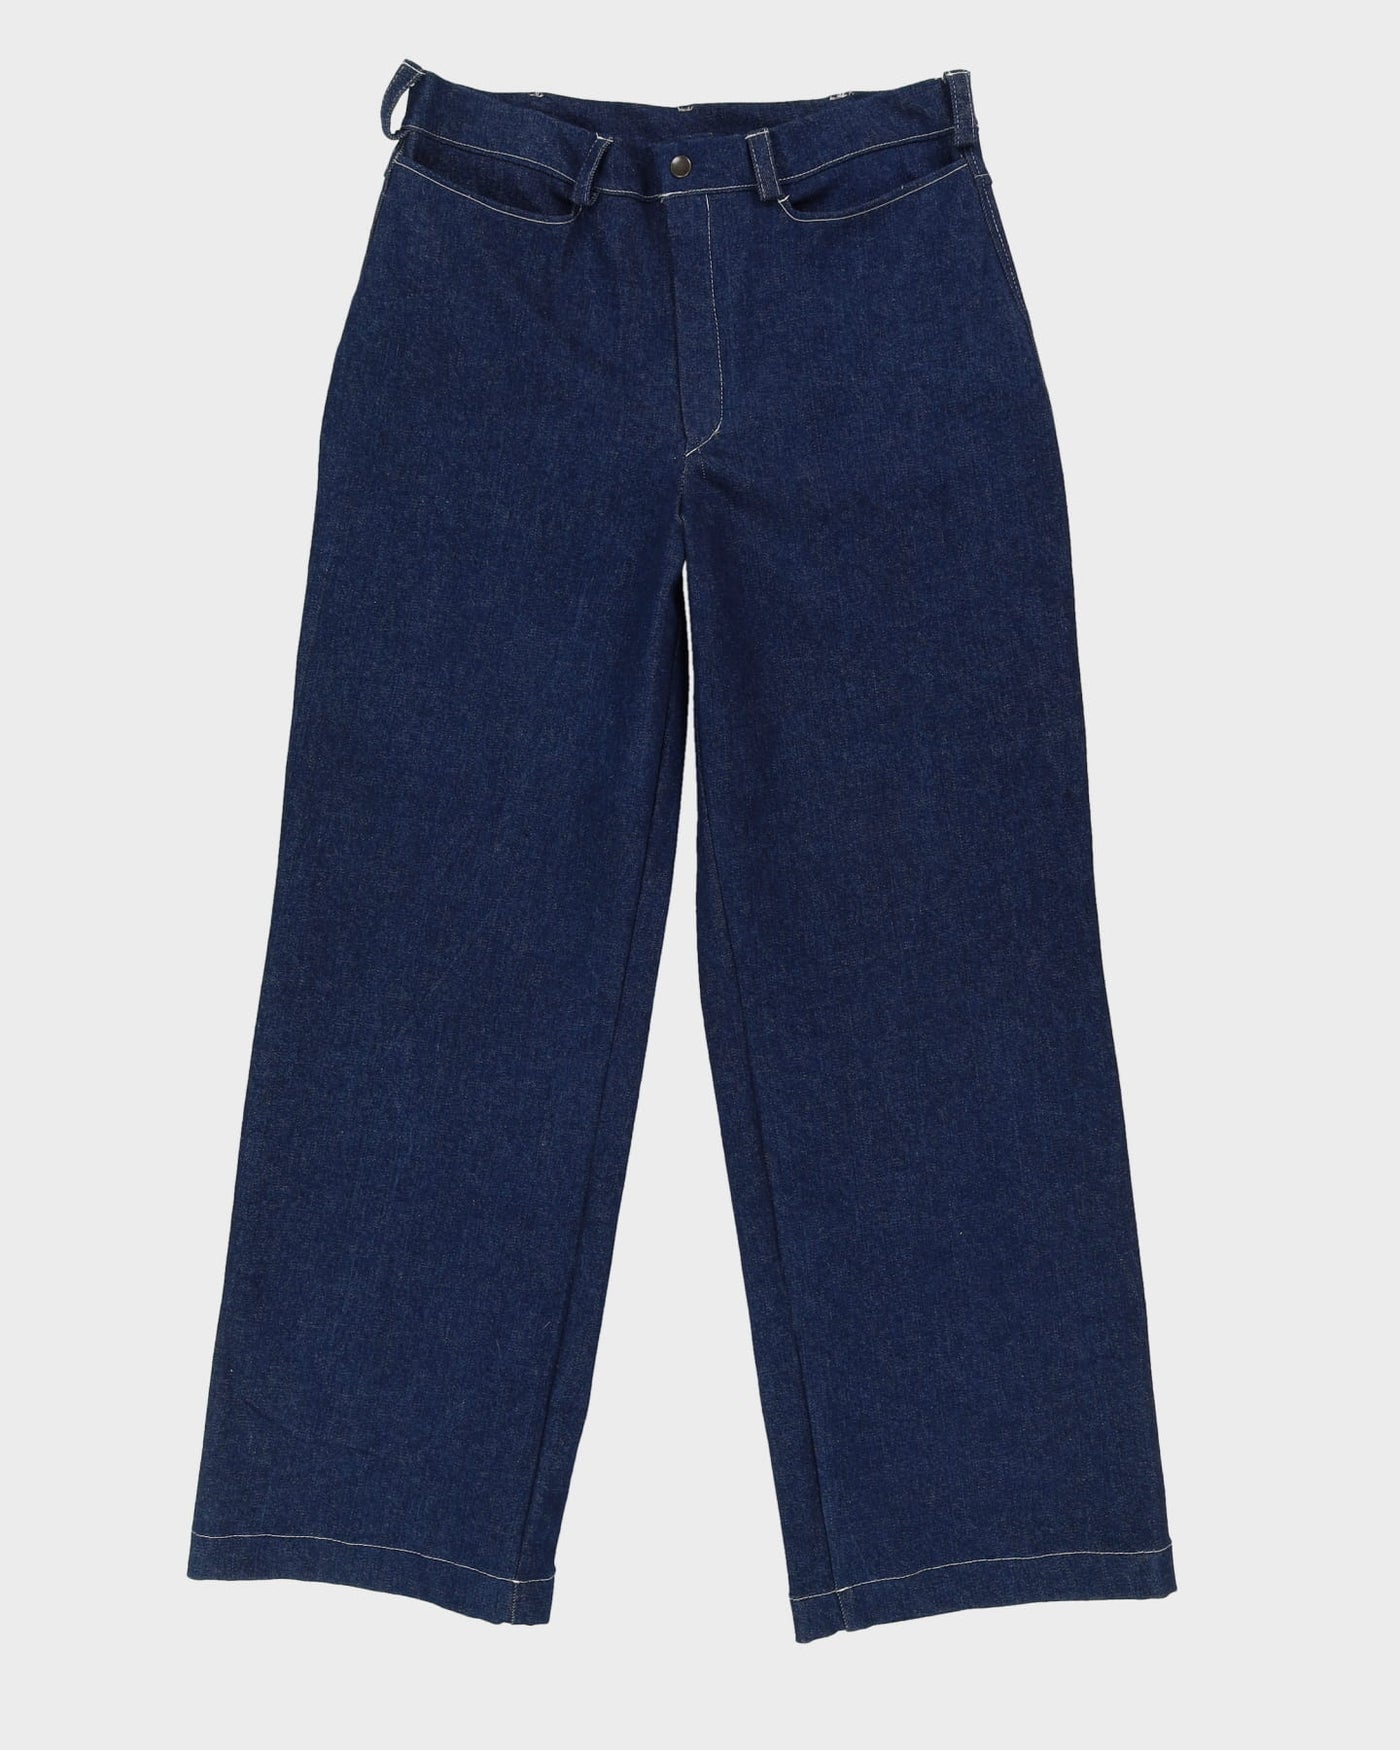 Rokit Originals Milo Blue Trousers - W36 L31